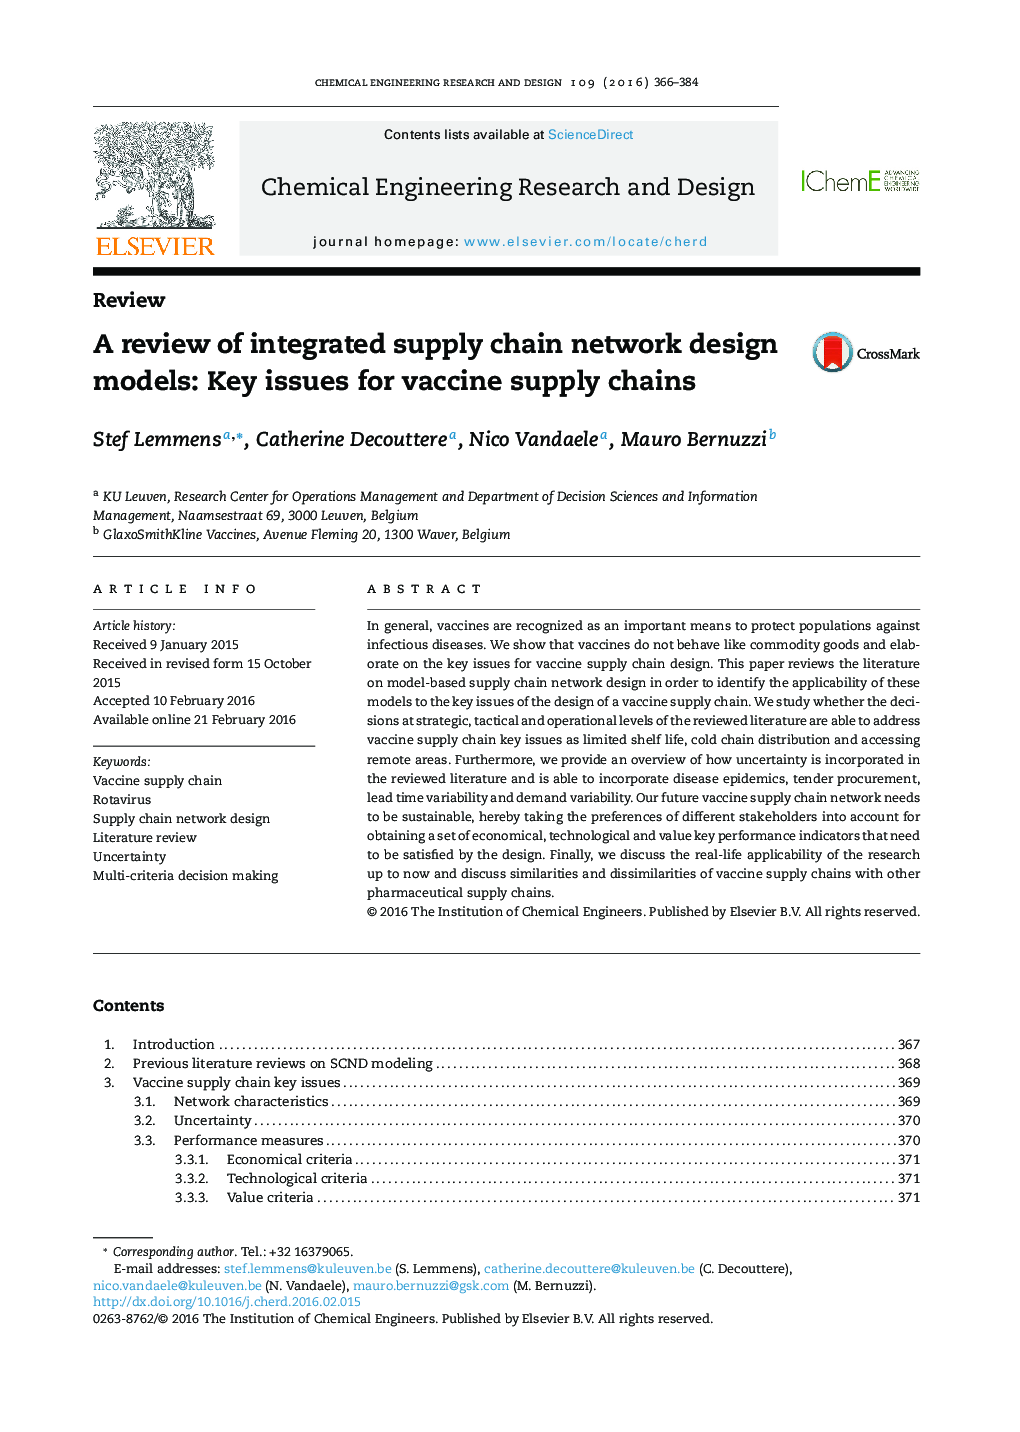 بررسی مدل های طراحی یکپارچه شبکه زنجیره تامین: مسائل کلیدی برای زنجیره های عرضه واکسن 